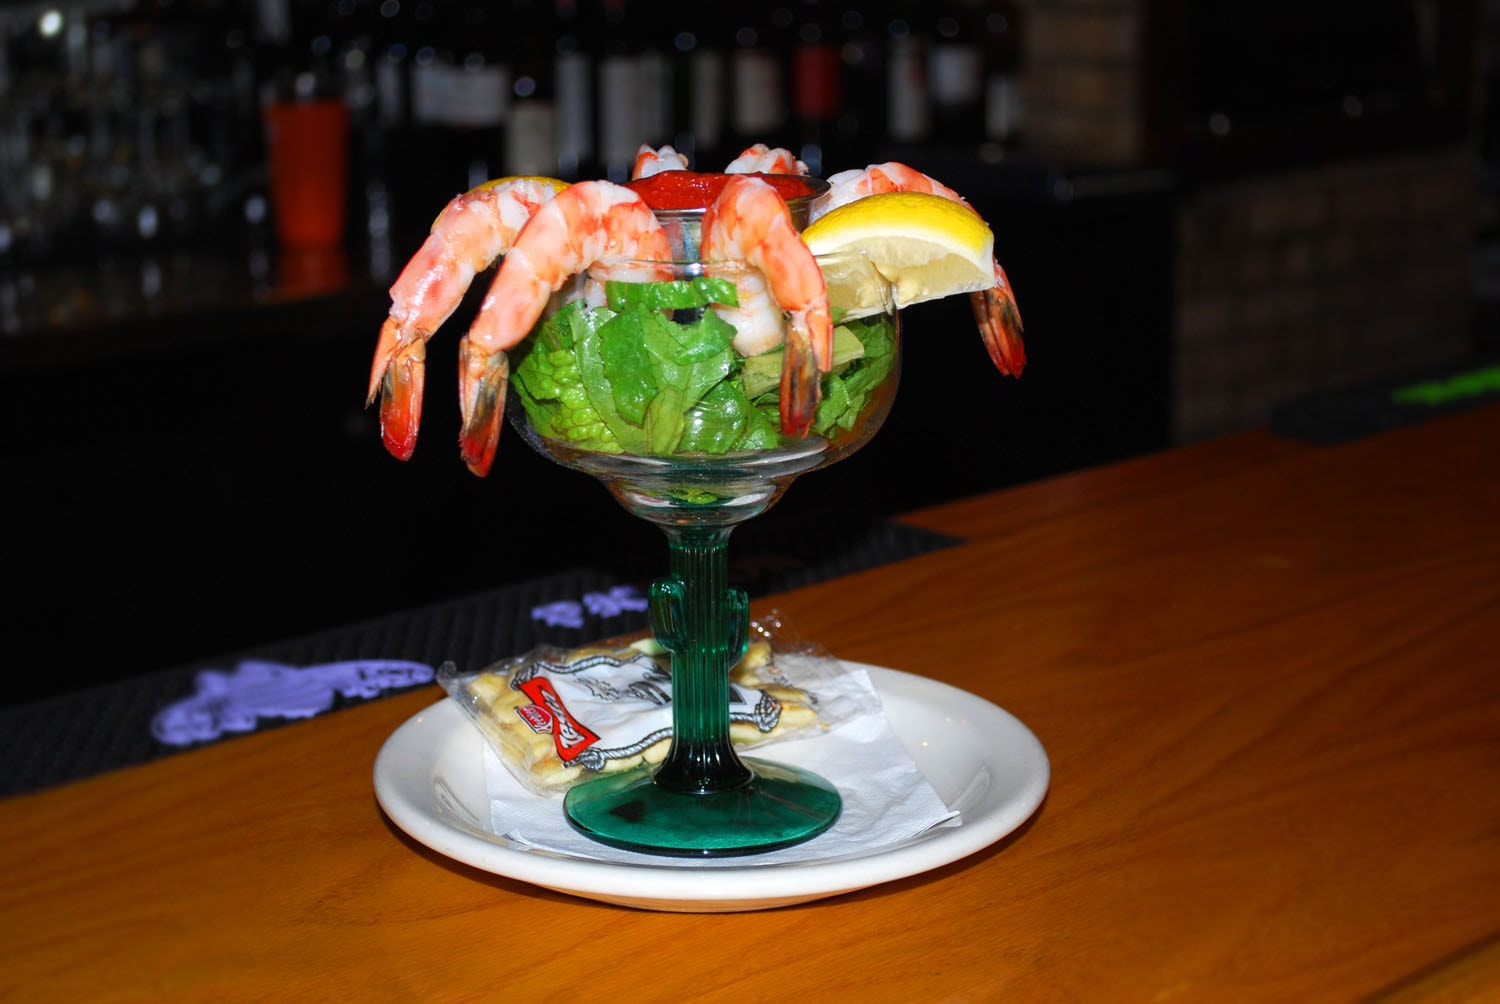 A shrimp cocktail